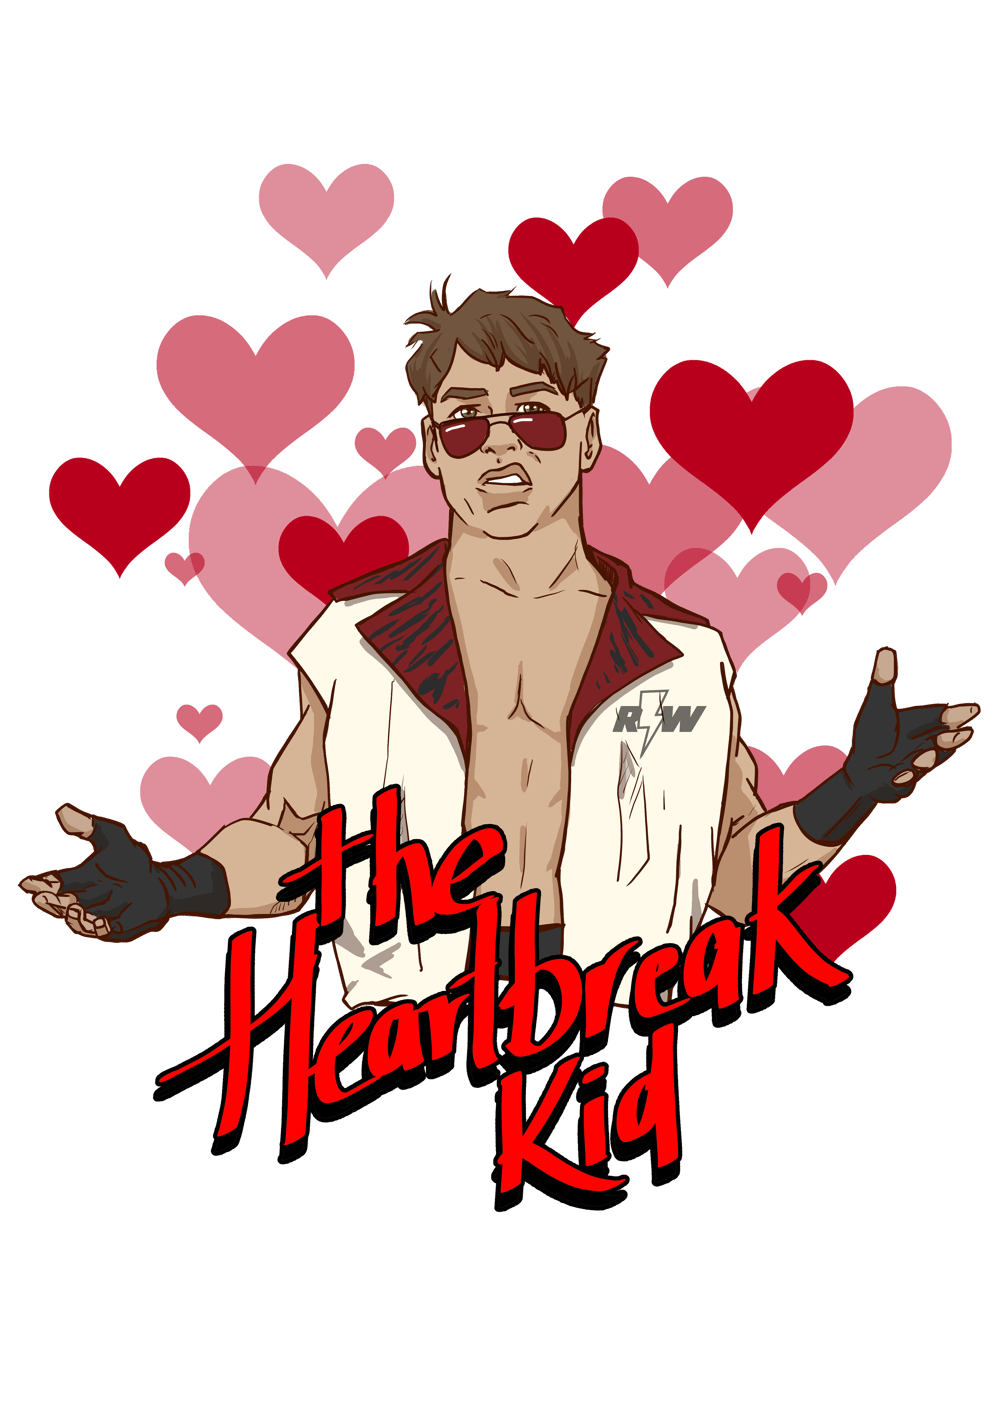 Heartbreak Kid - White